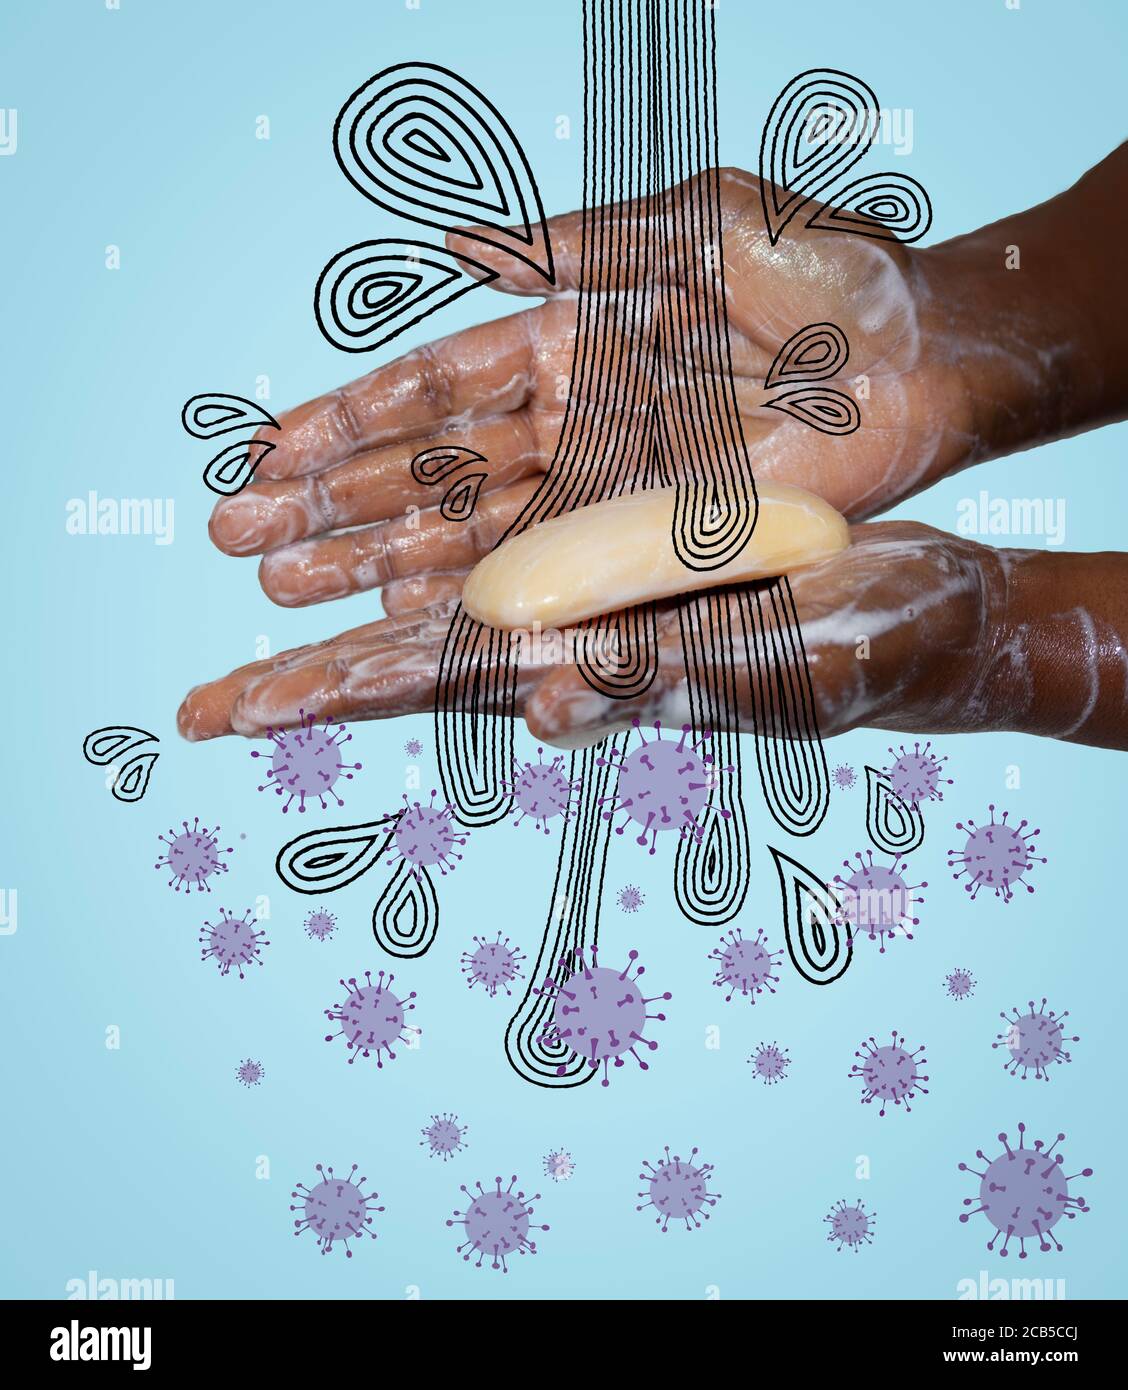 Konzeptbild einer afrikanisch-australischen Frau, die sich mit Seife die Hände wascht, mit stilisiertem Wasser und Virus, covid 19 coronavirus pandem Stockfoto